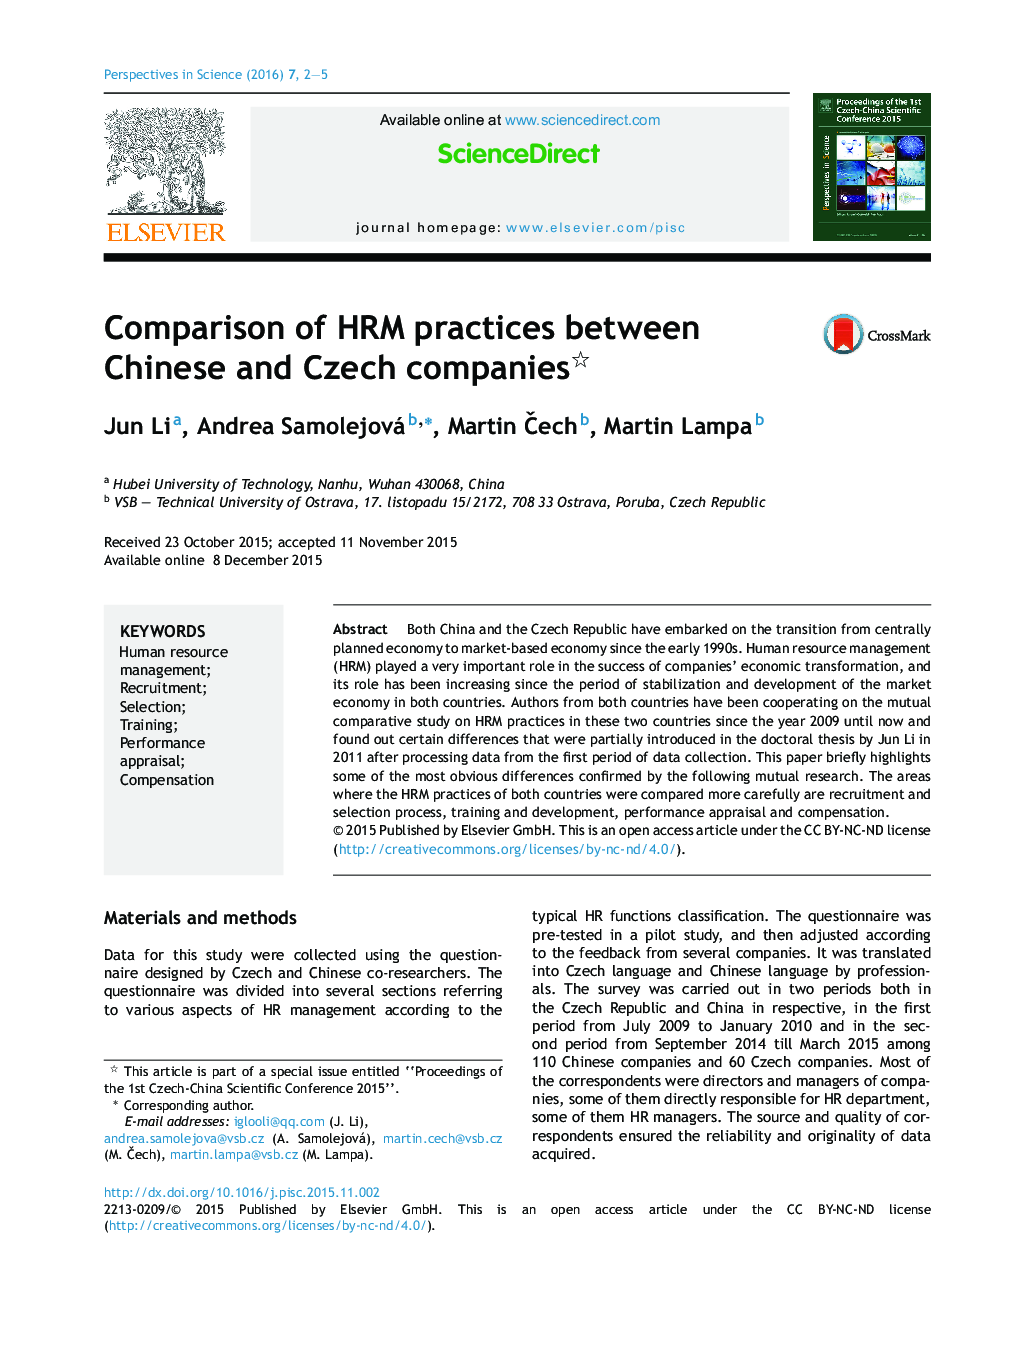 مقایسه اقدامات مدیریت منابع انسانی میان شرکت های چینی و چک